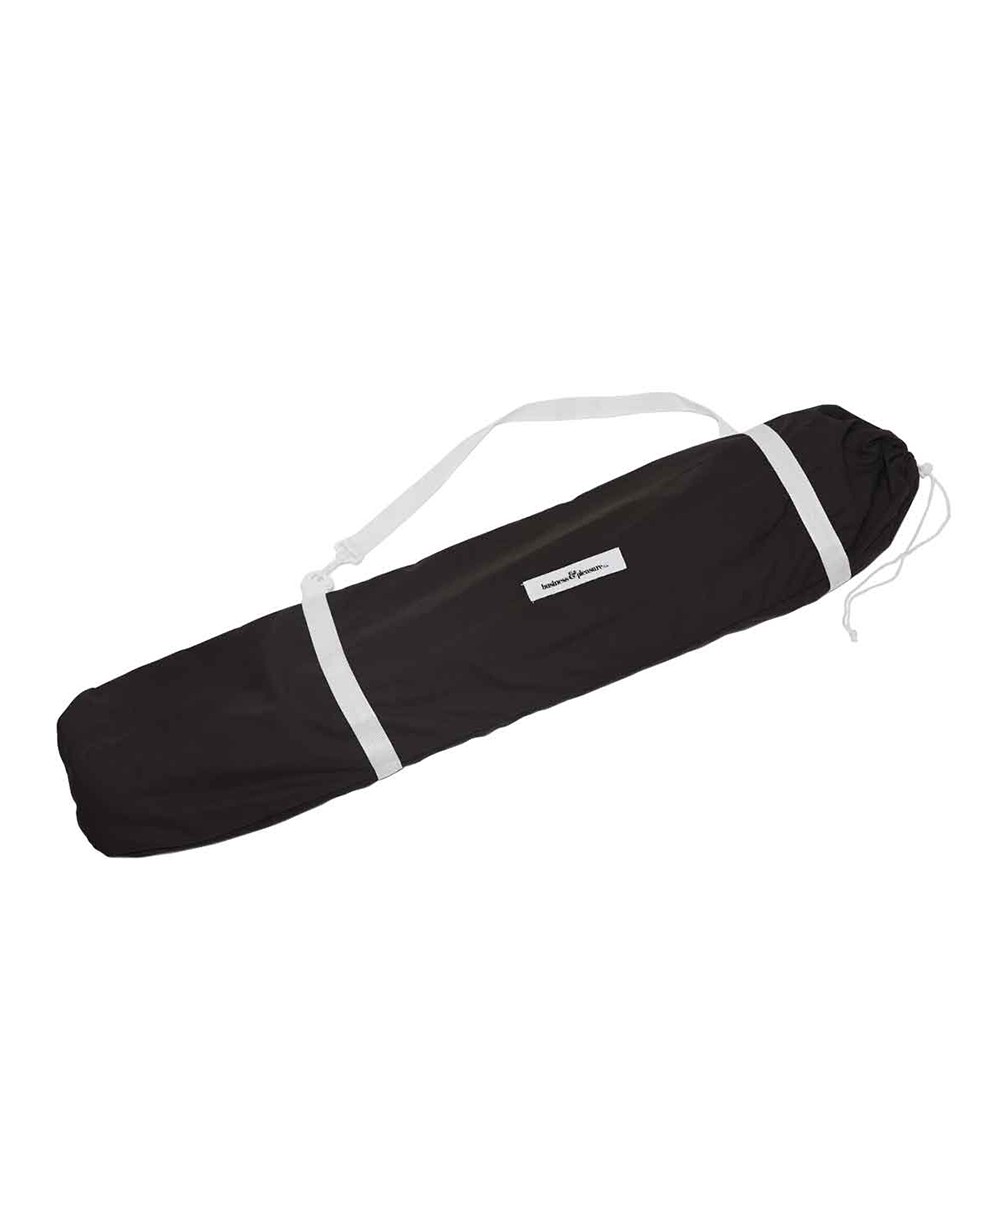 Der zusammengepackte Sonnenschirm „Holiday Beach Umbrella“ im schwarzen Design aus der 2023 Sommer Kollektion von Business&Pleasure im RAUM concept store.